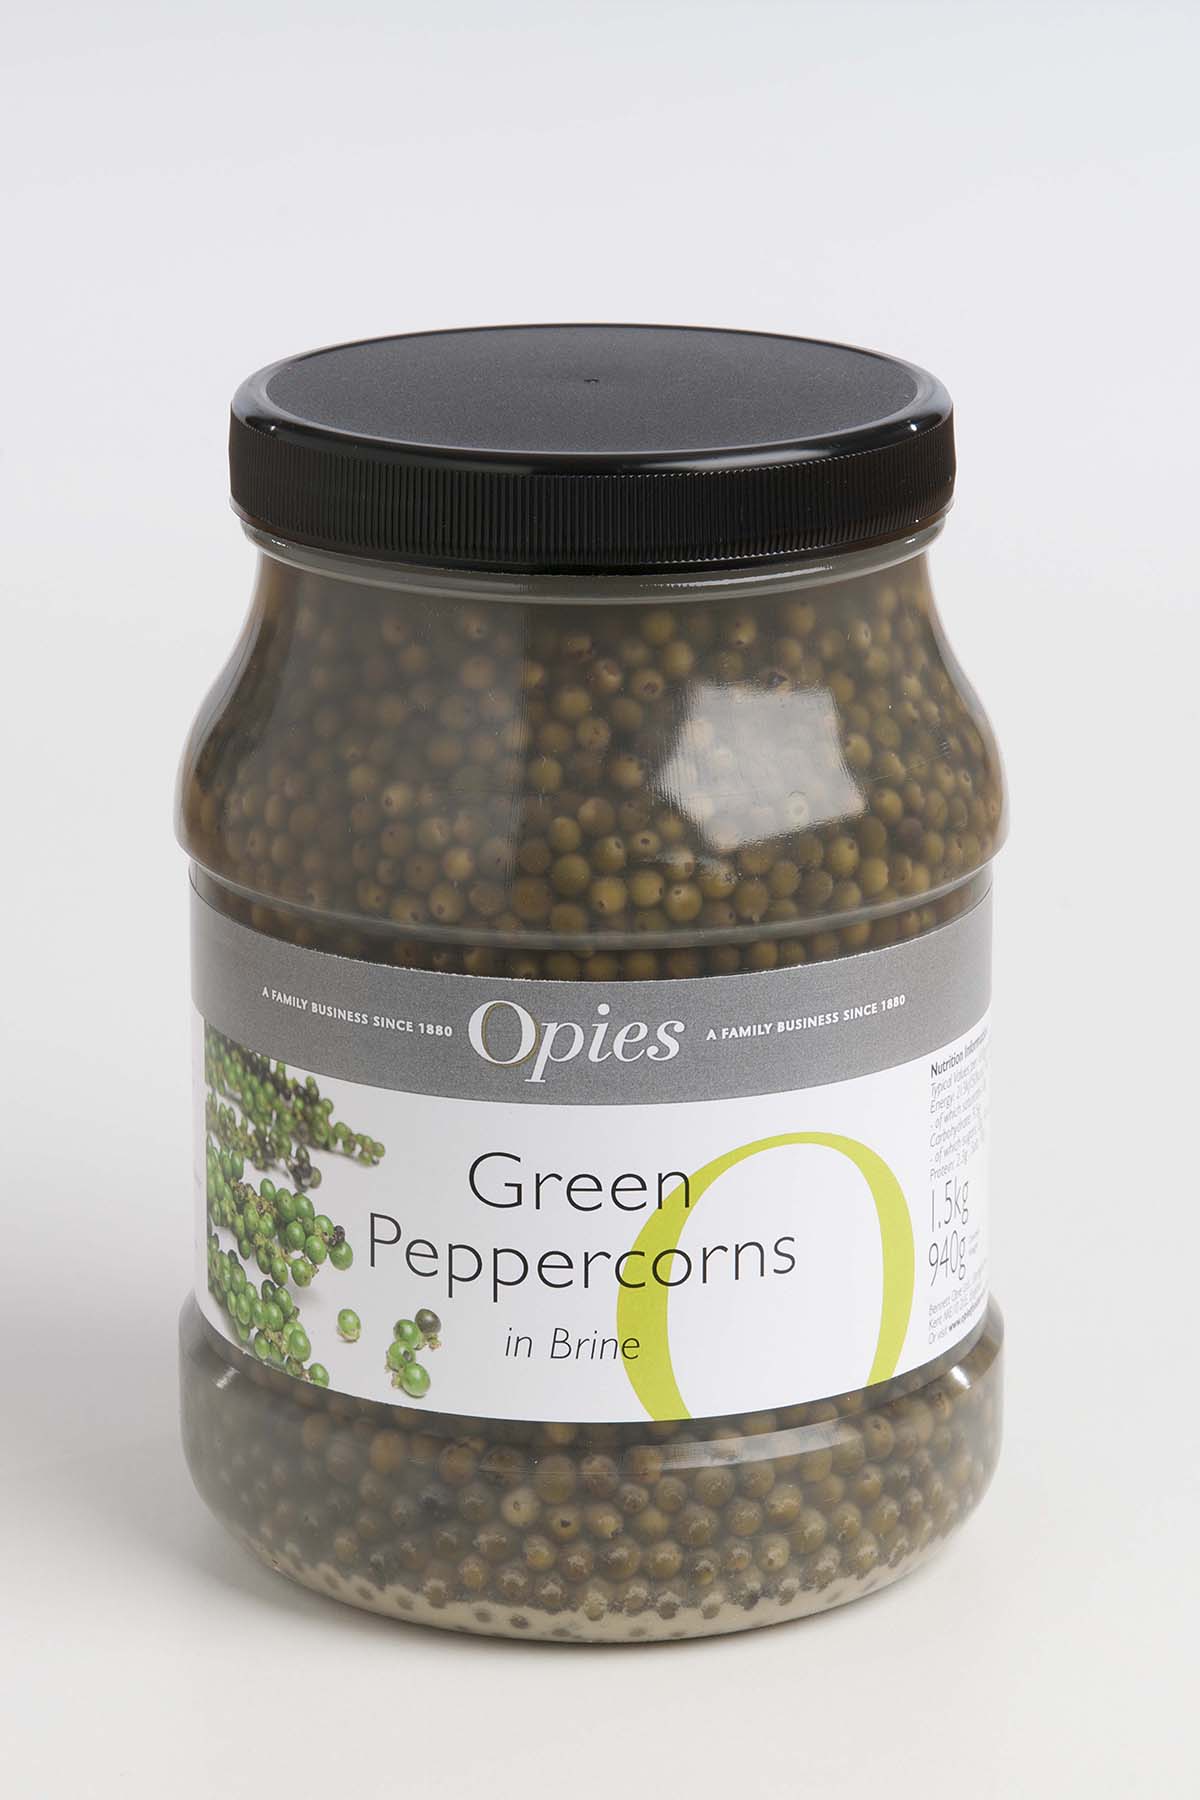 Opies Green Peppercorns in Brine 1.5kg